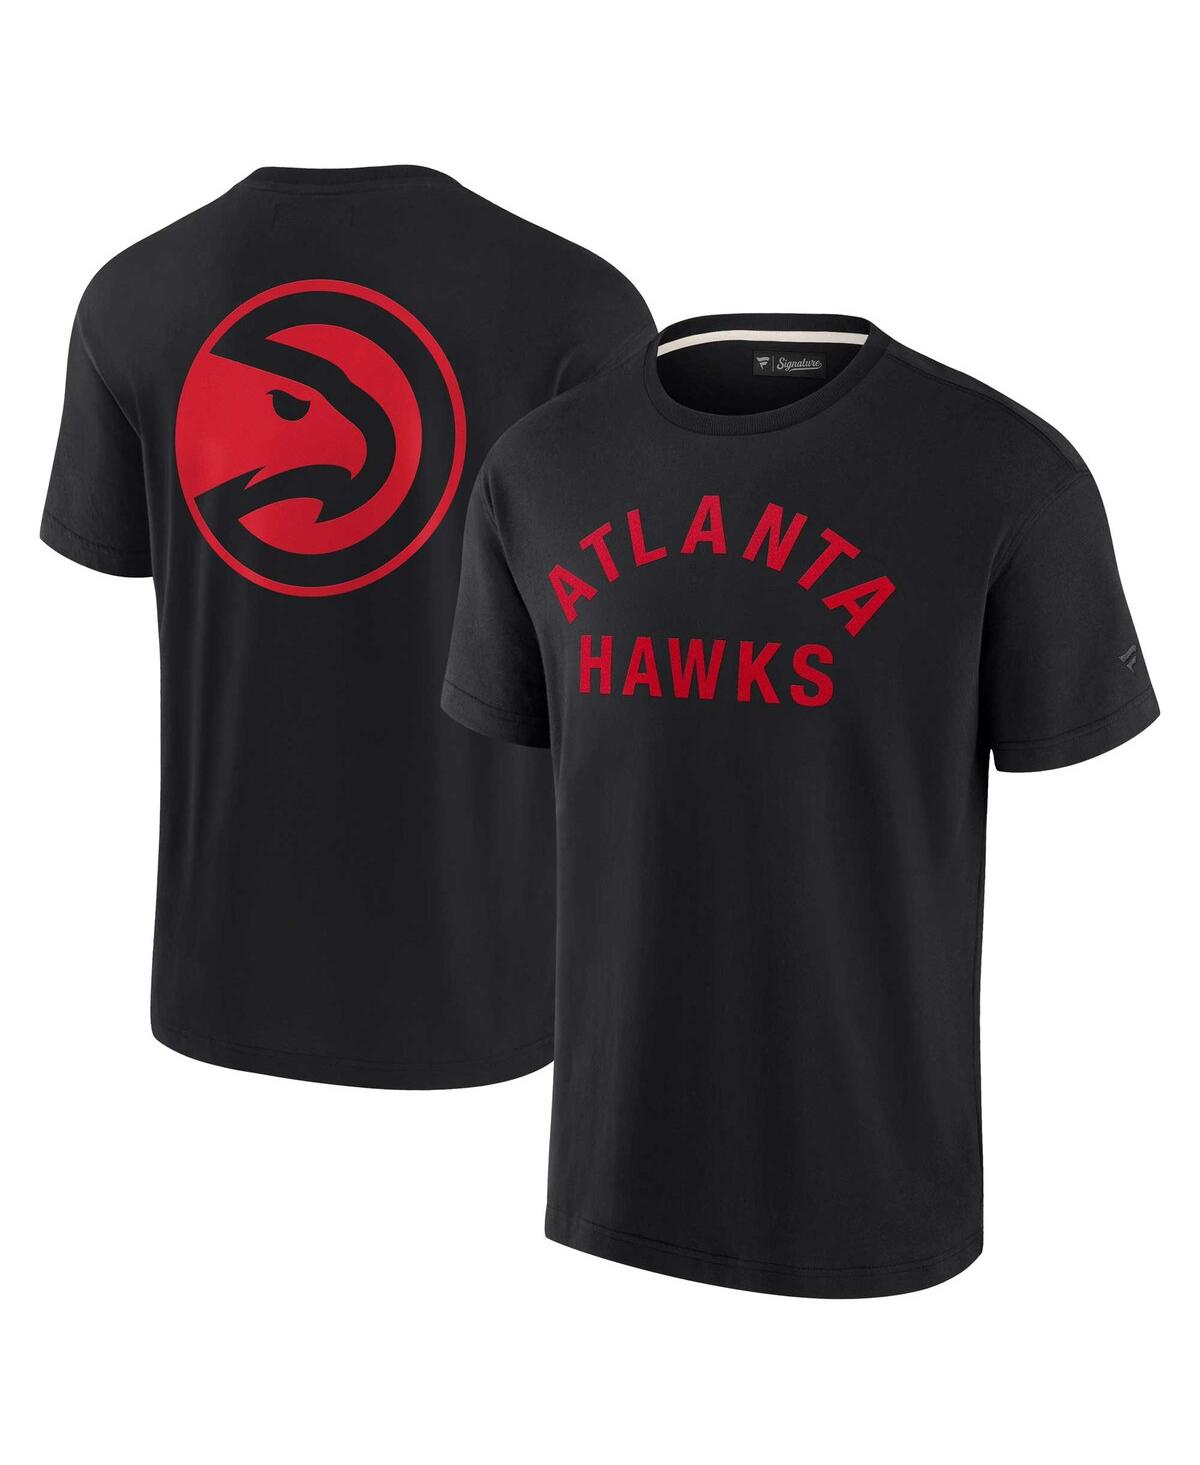 Men's and Women's Fanatics Signature Black Atlanta Hawks Super Soft T-shirt - Black